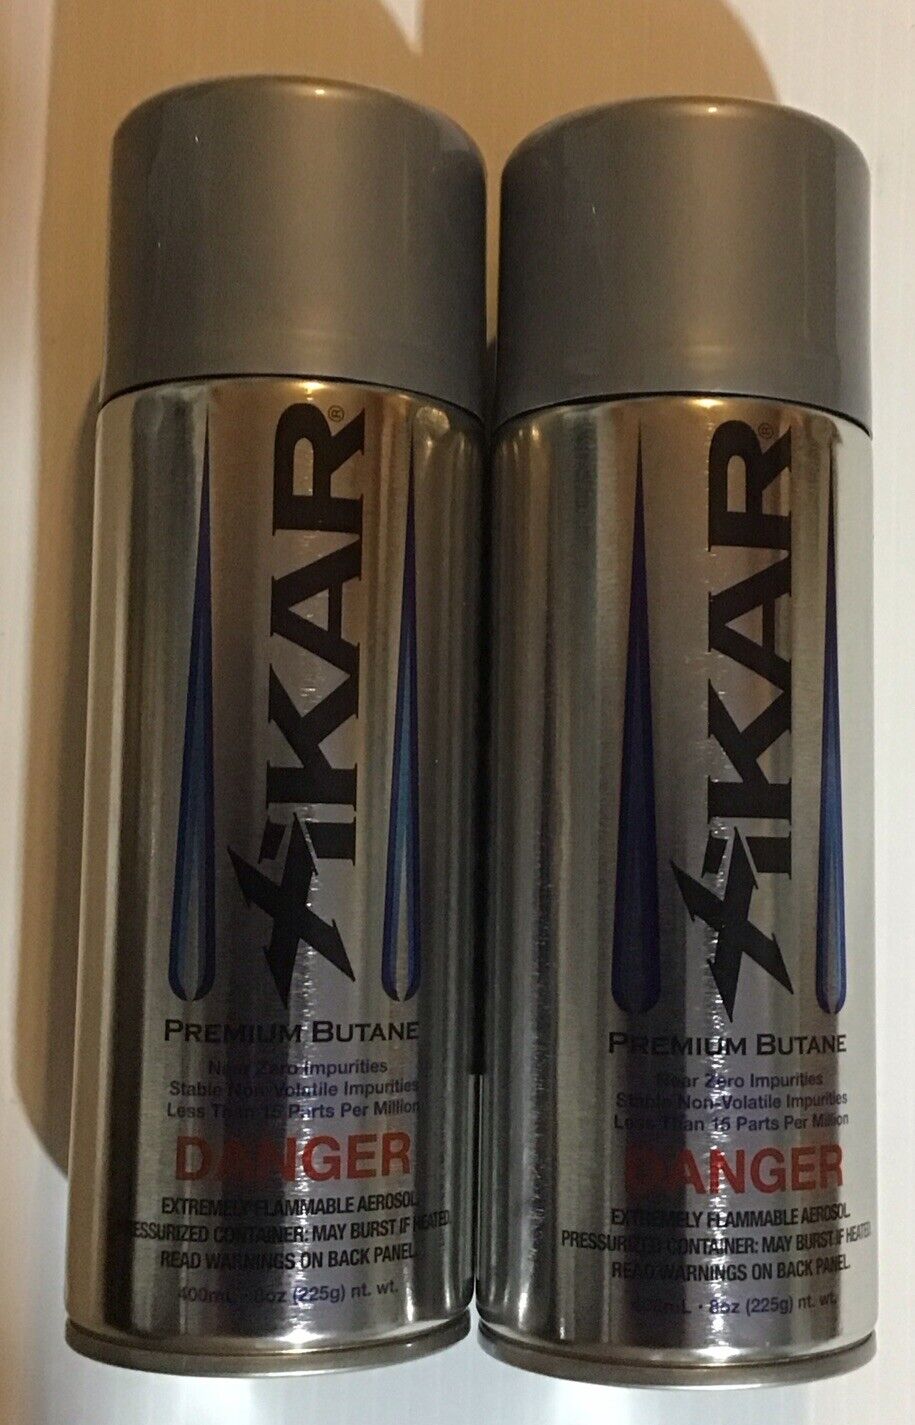 2 Cans 8oz each. Xikar Premium Butane Lighter Fuel Refill for Lighters.